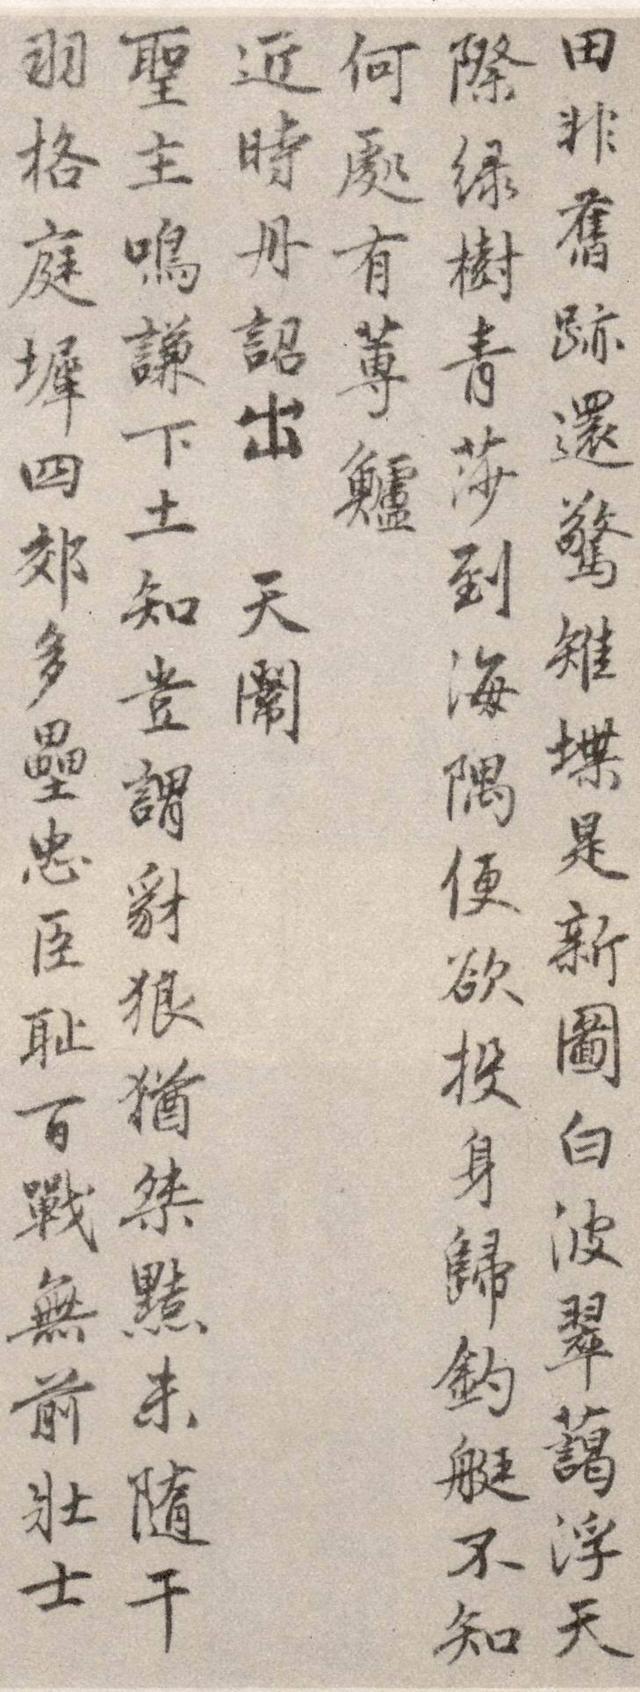 刘伯温书法—看完他的字，但觉春风浩荡